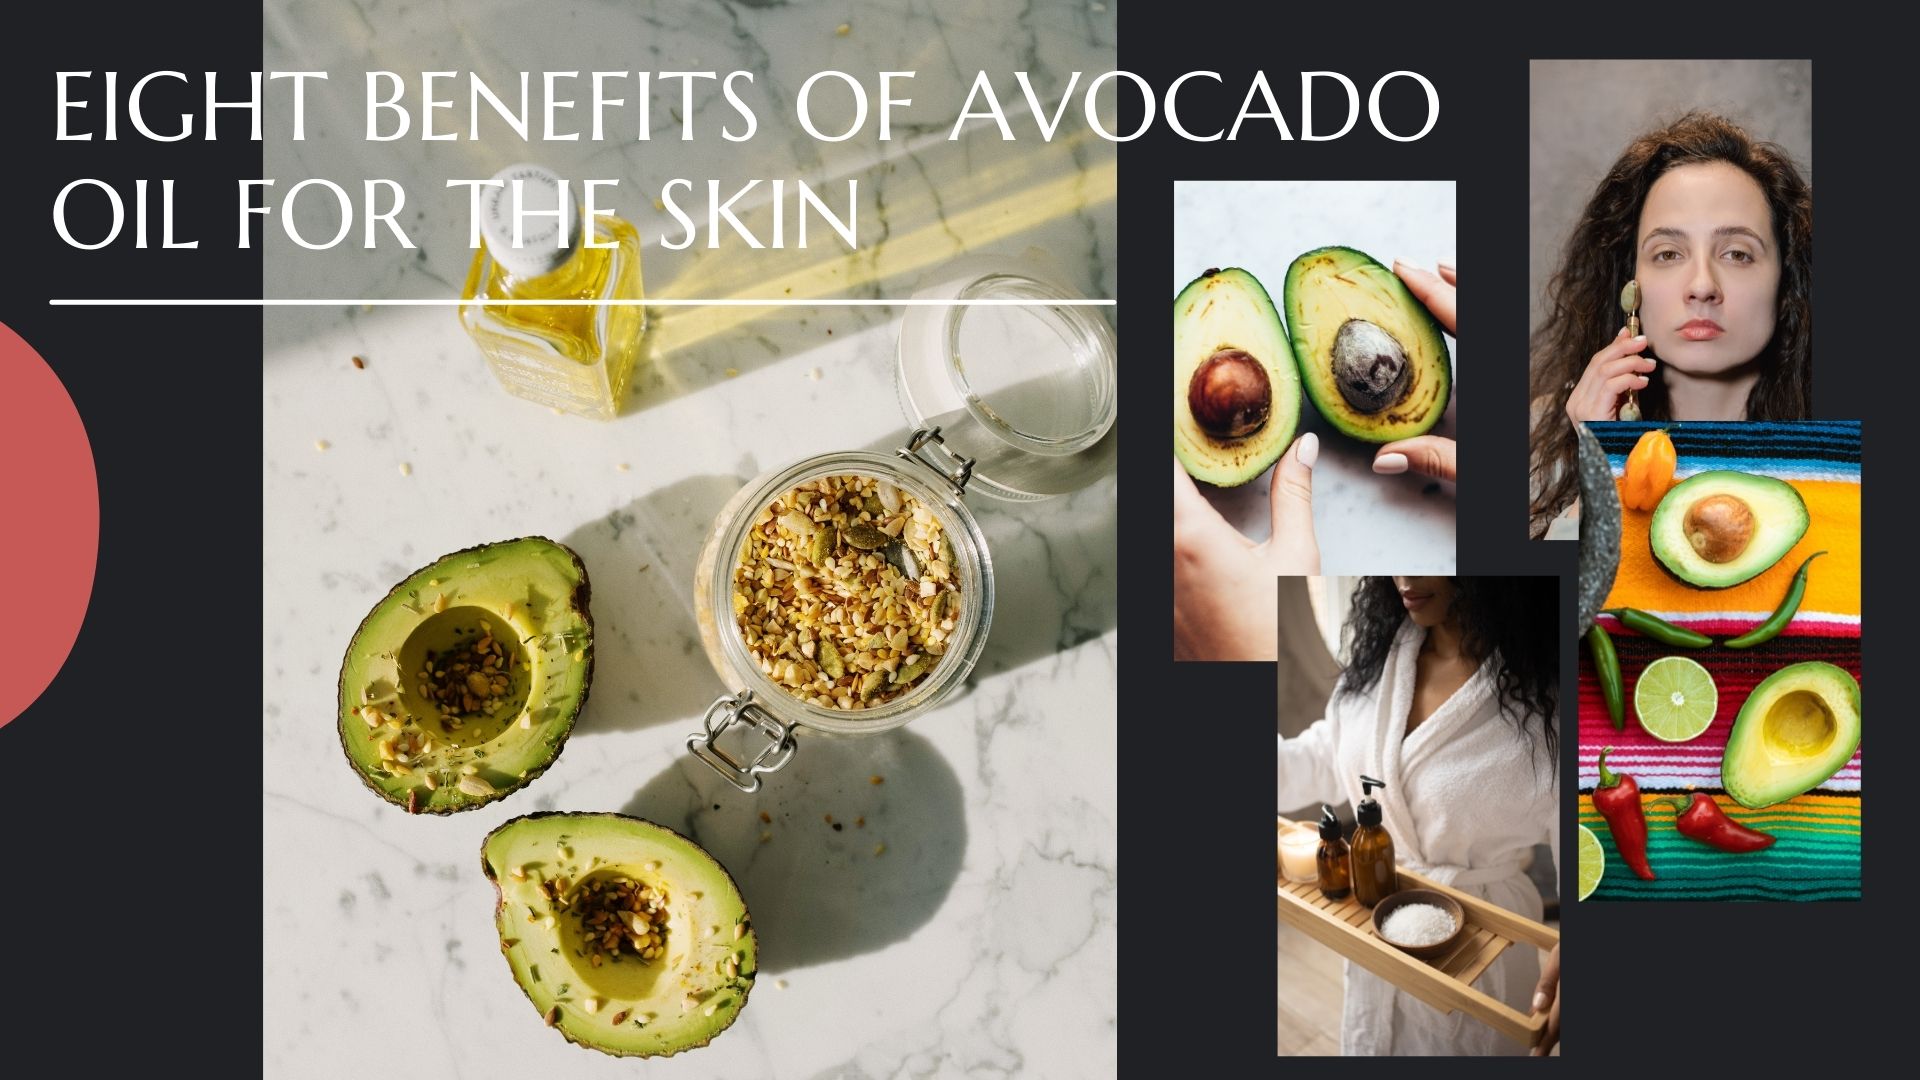 Avocado oil for the skin - Prosper Diet Program